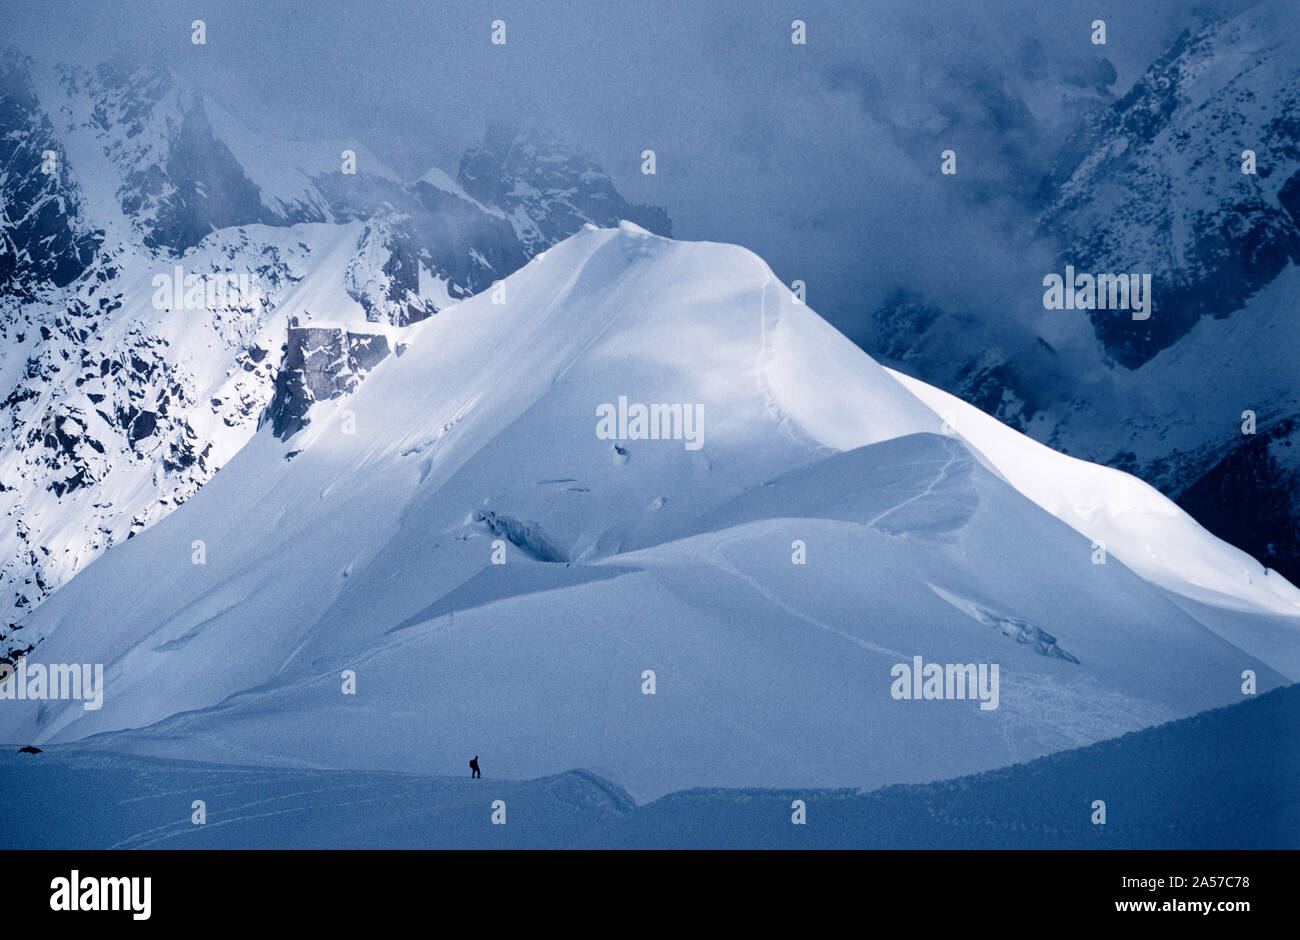 La minuscola figura di un alpinista sulla Aiguille de Midi con le montagne delle Alpi al di là Foto Stock